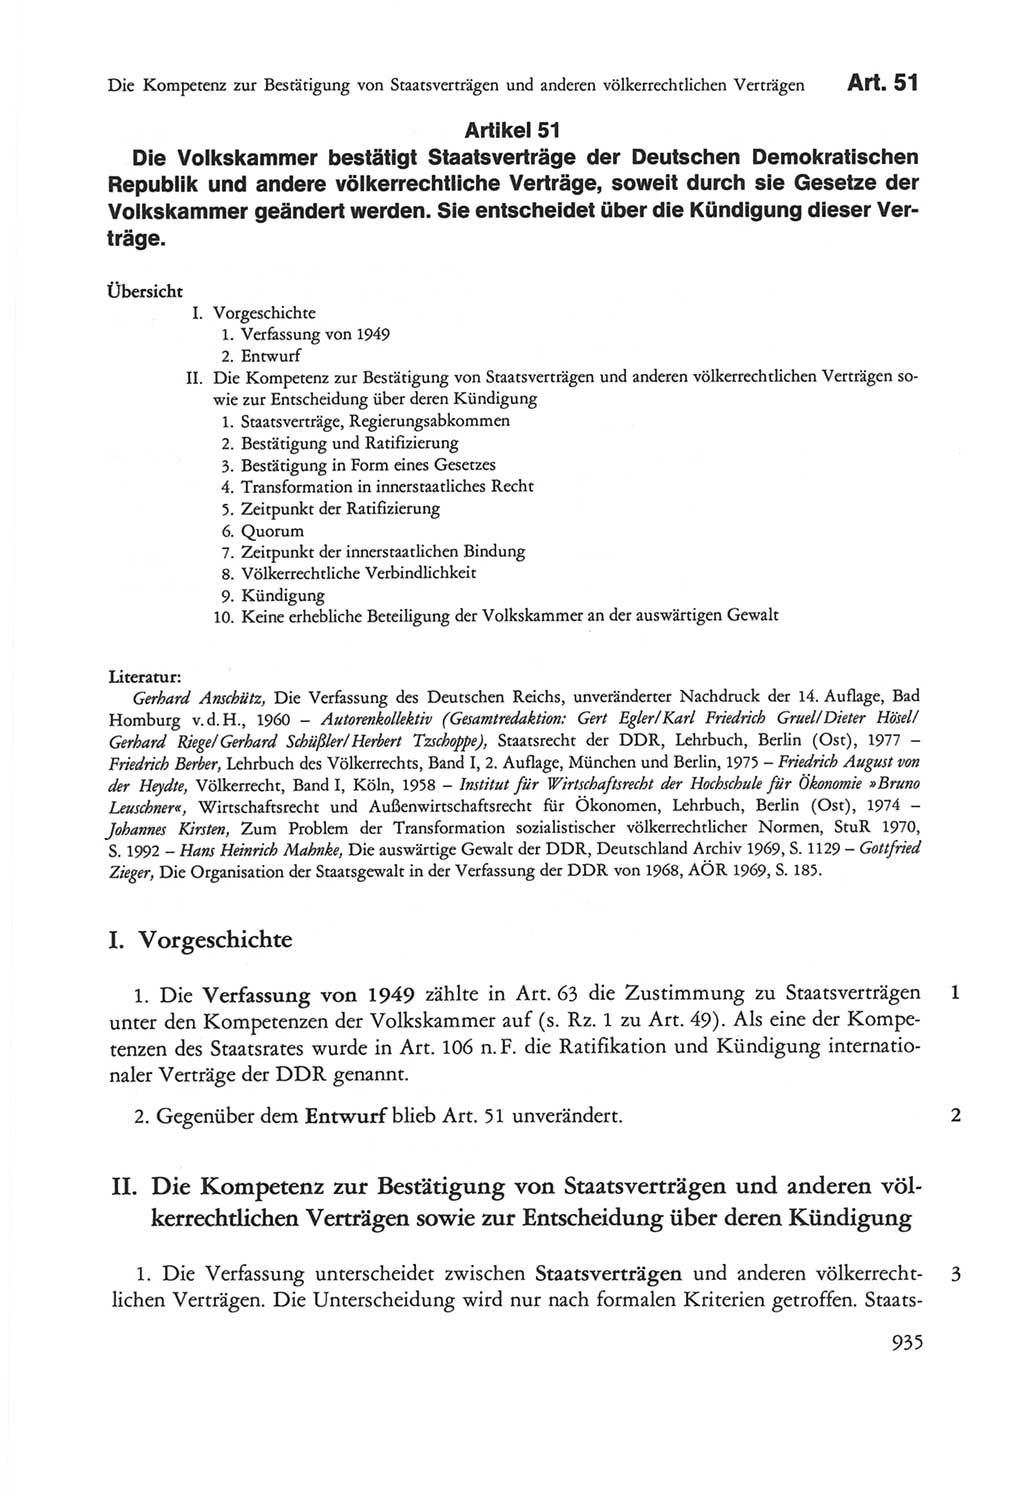 Die sozialistische Verfassung der Deutschen Demokratischen Republik (DDR), Kommentar 1982, Seite 935 (Soz. Verf. DDR Komm. 1982, S. 935)